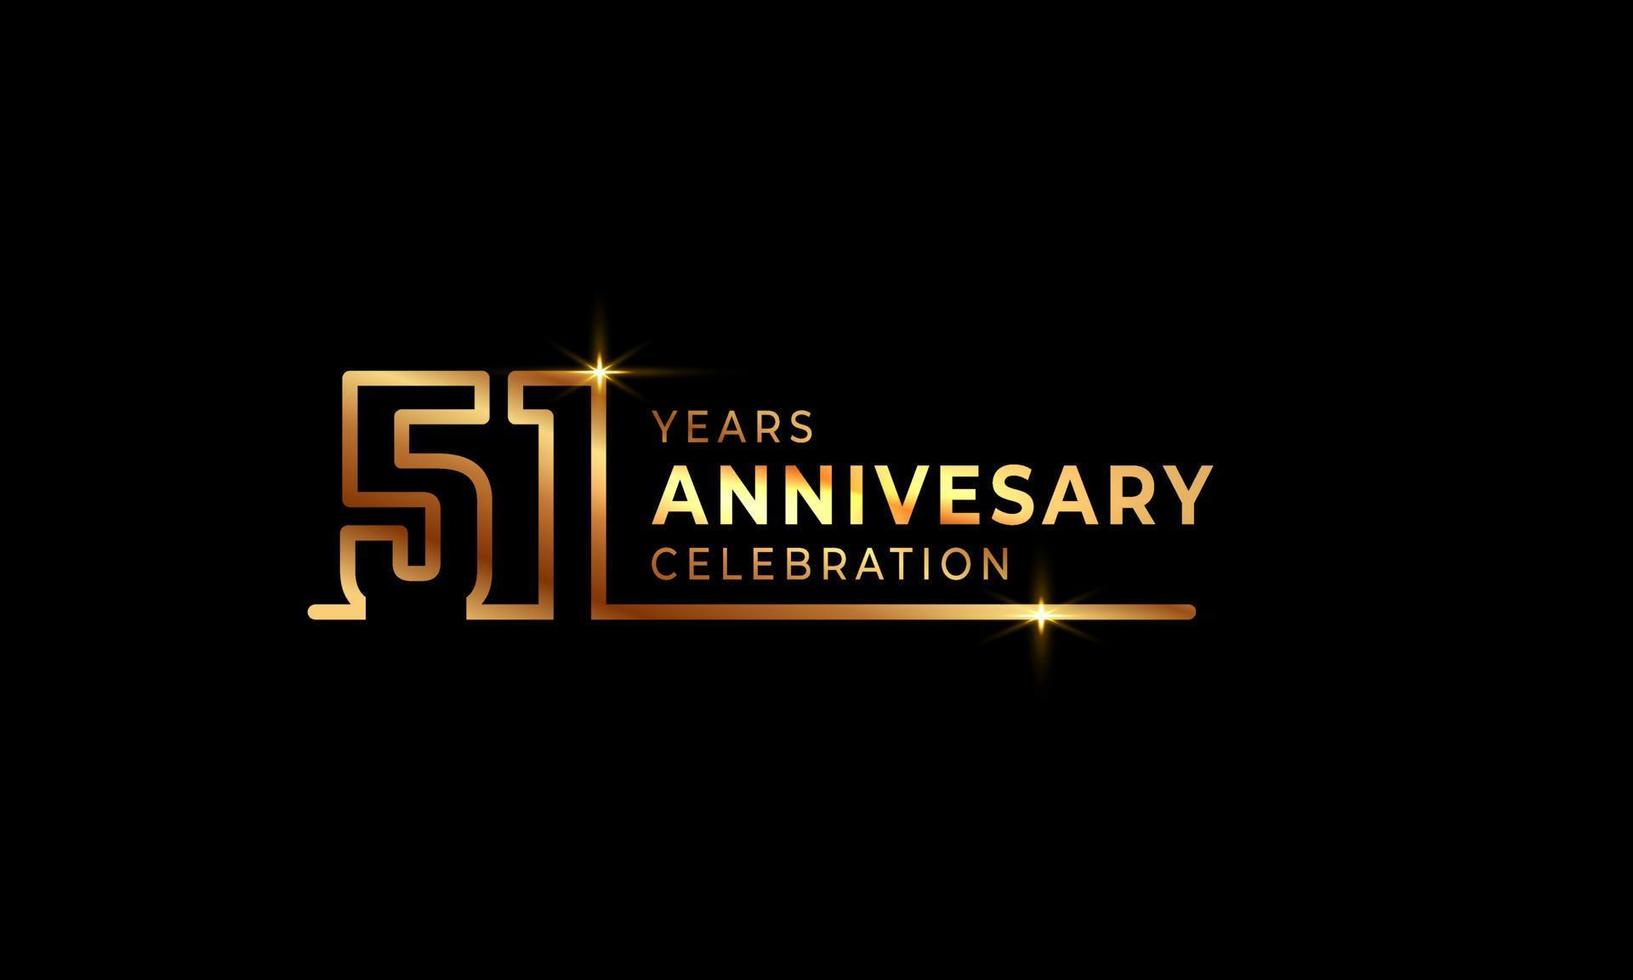 51-jarig jubileumviering logo met gouden gekleurde lettertypenummers gemaakt van één verbonden lijn voor feestgebeurtenis, bruiloft, wenskaart en uitnodiging geïsoleerd op donkere achtergrond vector